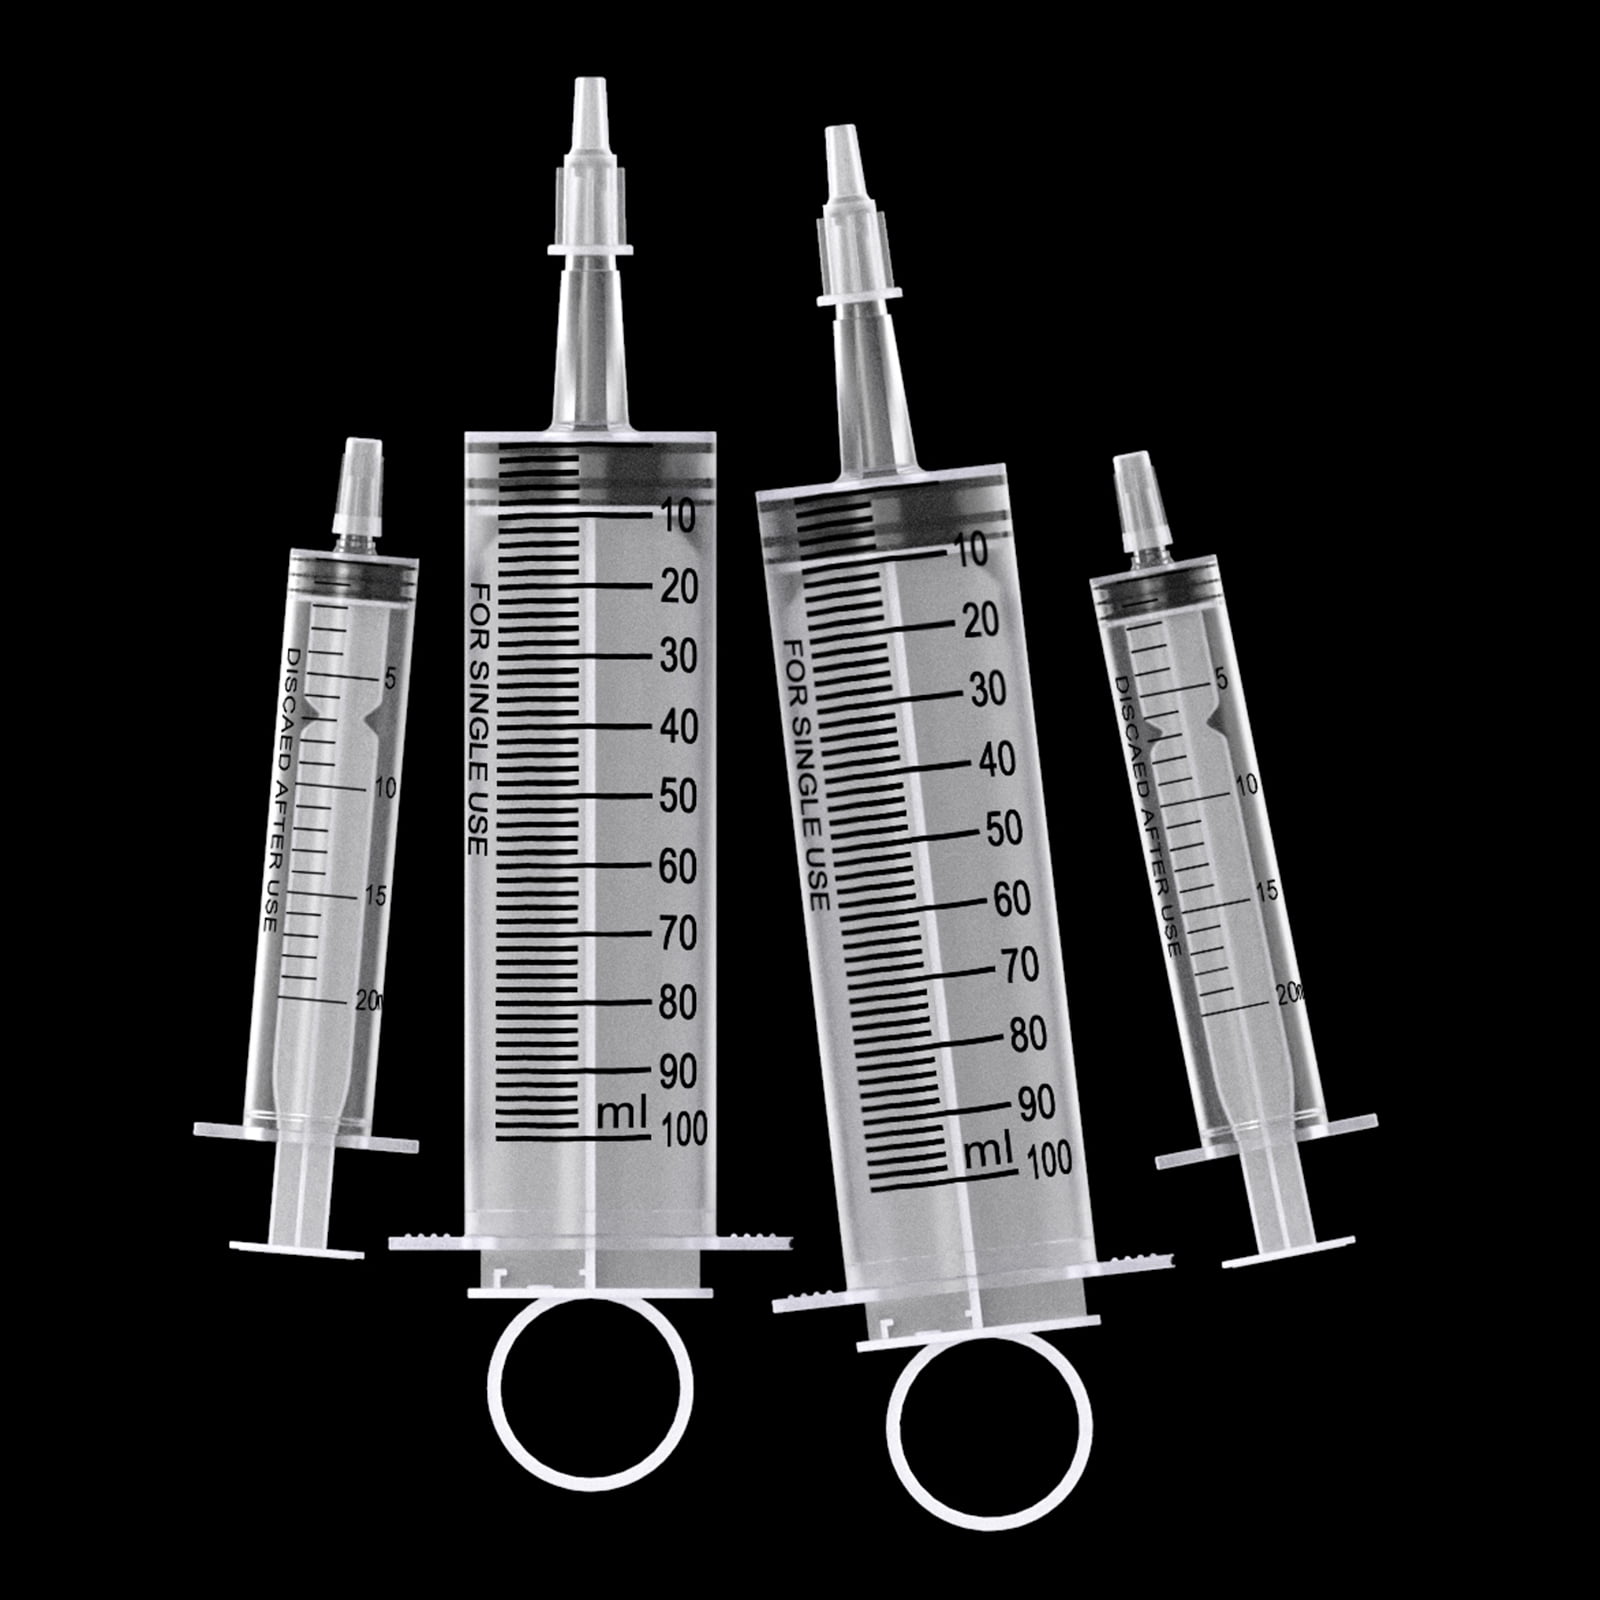 Romed Lot de 100 seringues stériles à usage unique 2-3 ml